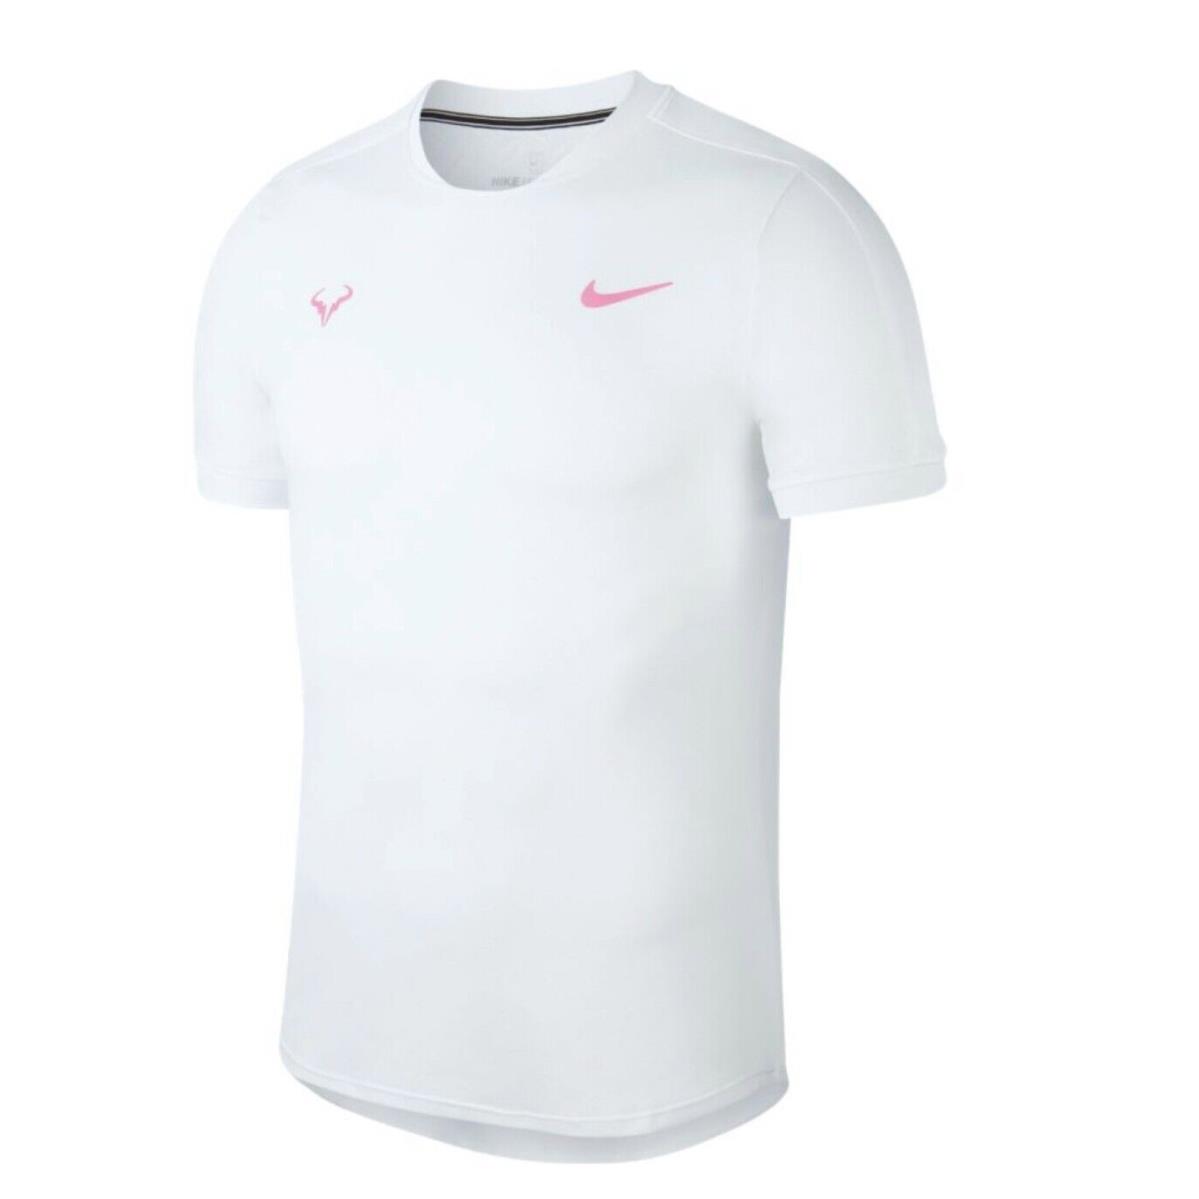 Nike Tennis Shirt Rafa Nadal Aeroreact Court White AT4182-101 Men`s Size XL